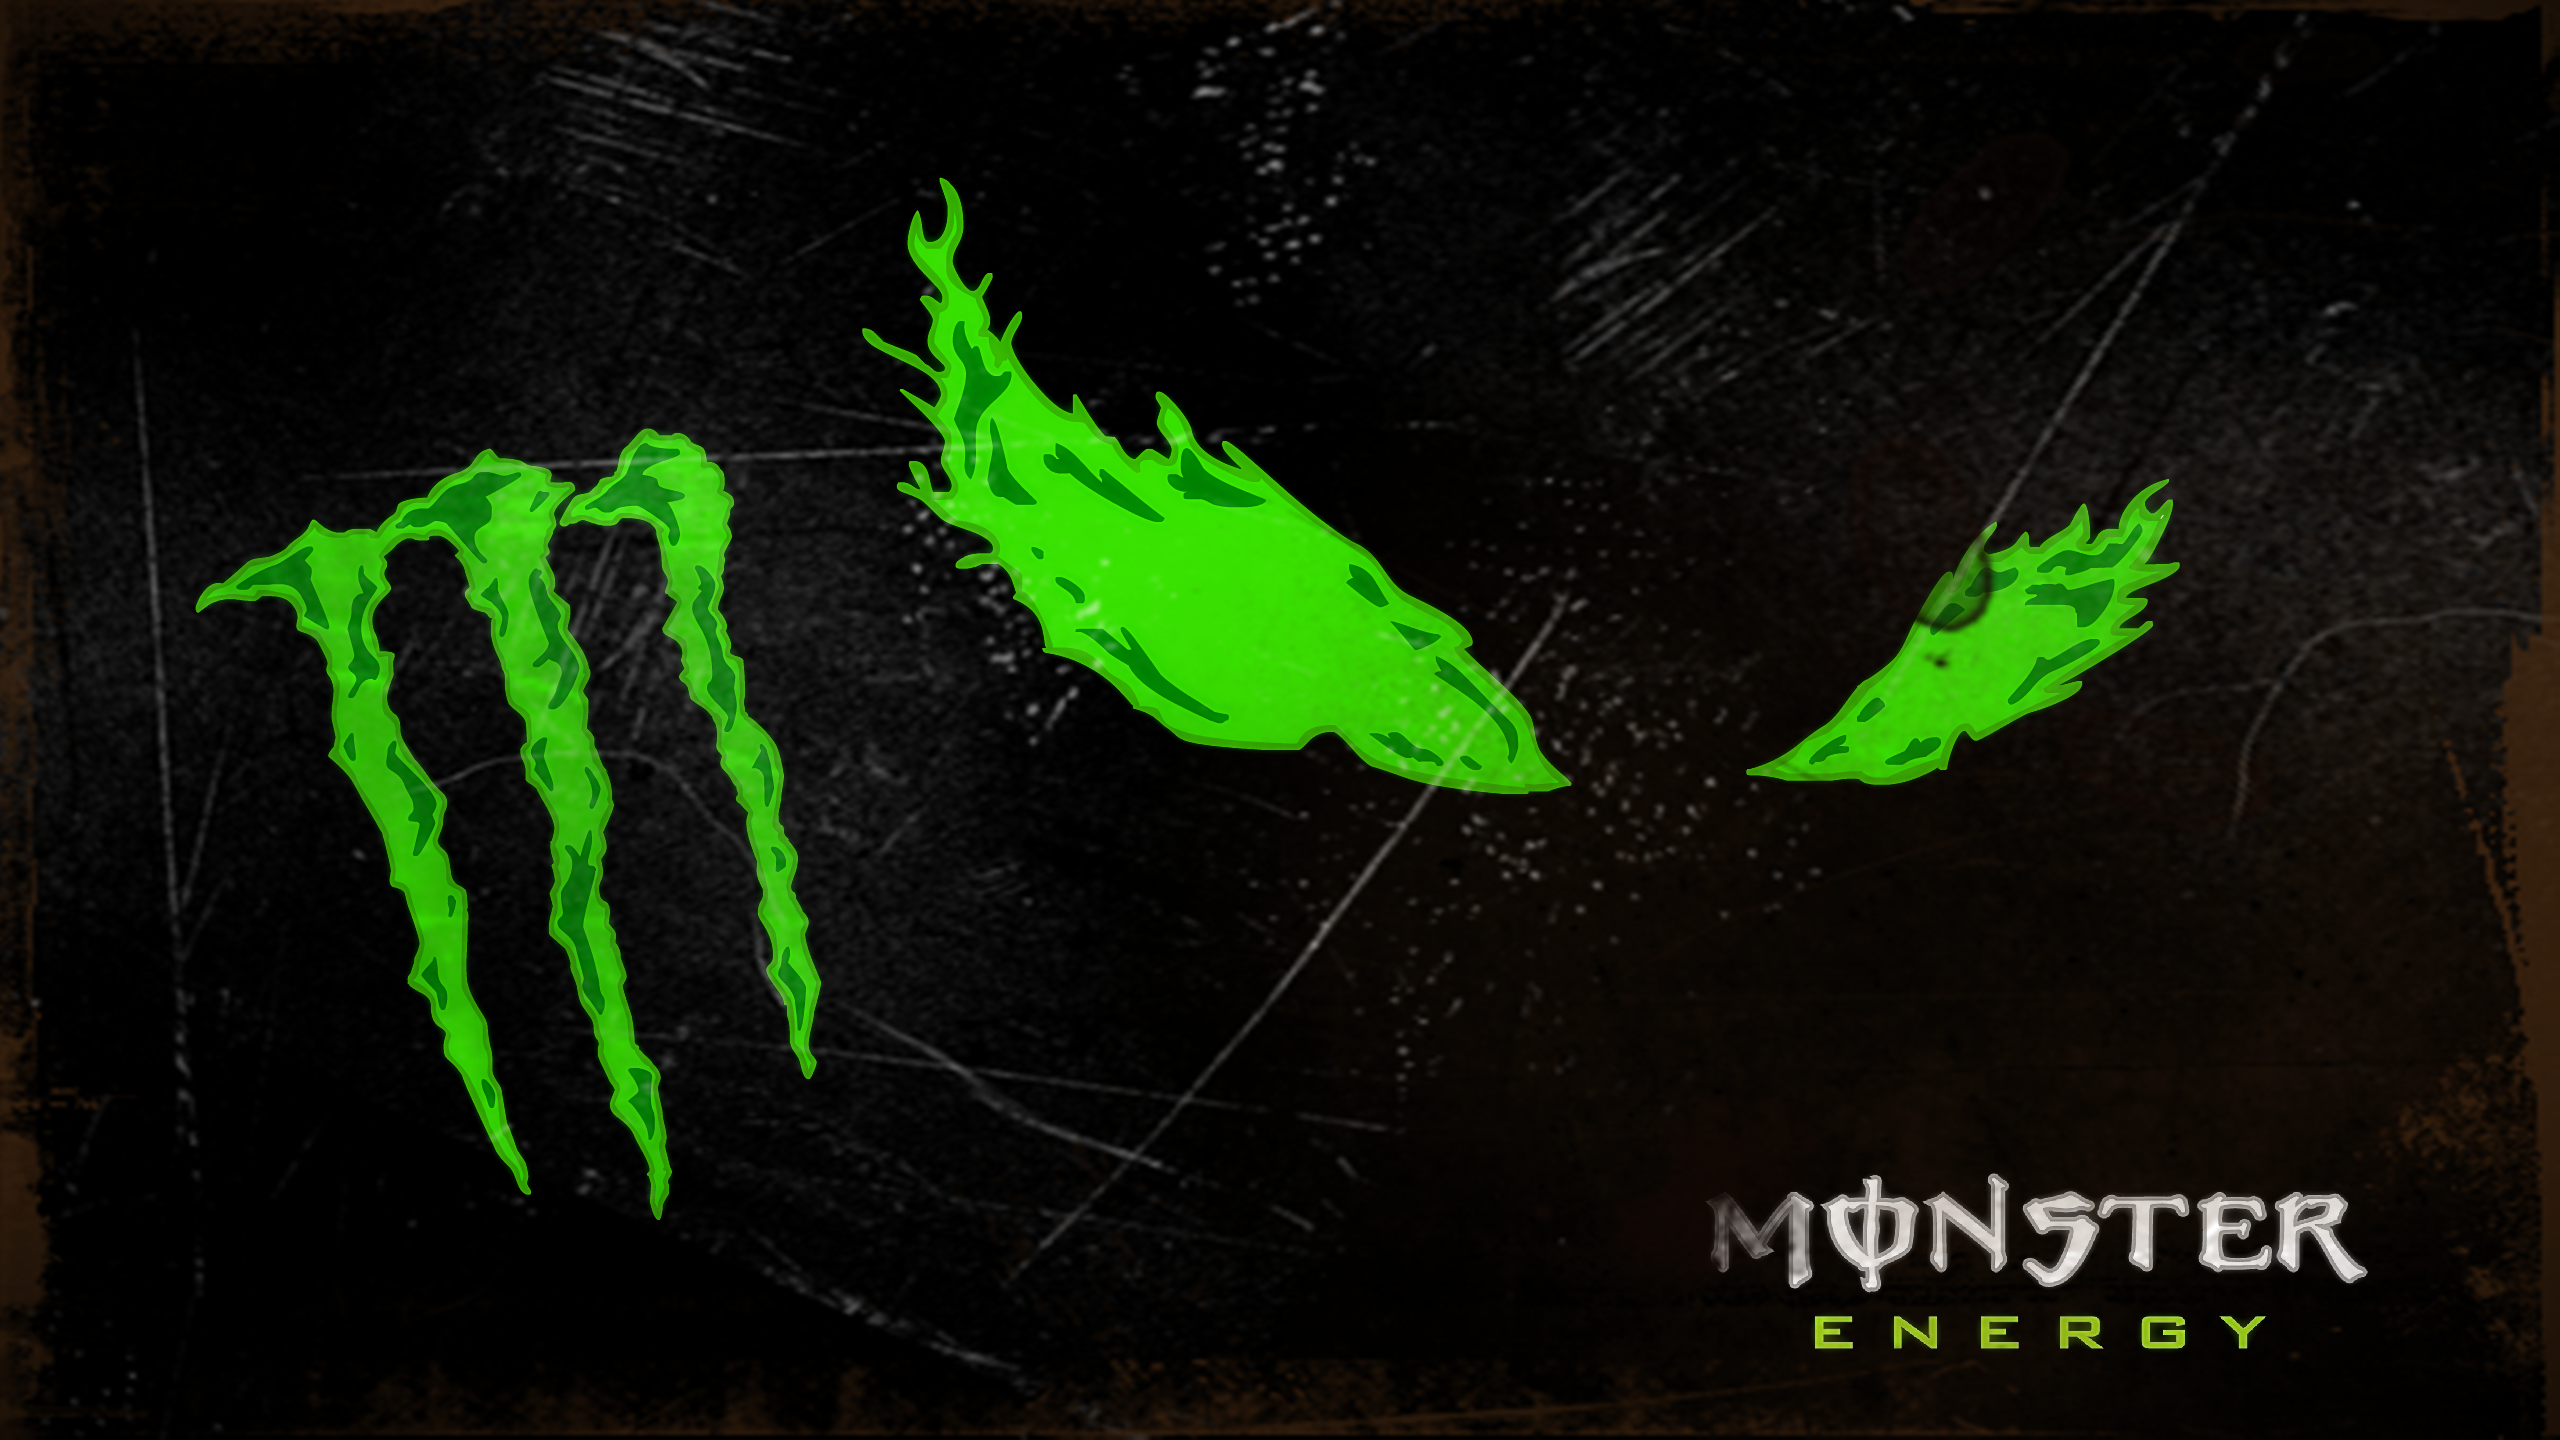 Monster Energy , HD Wallpaper & Backgrounds